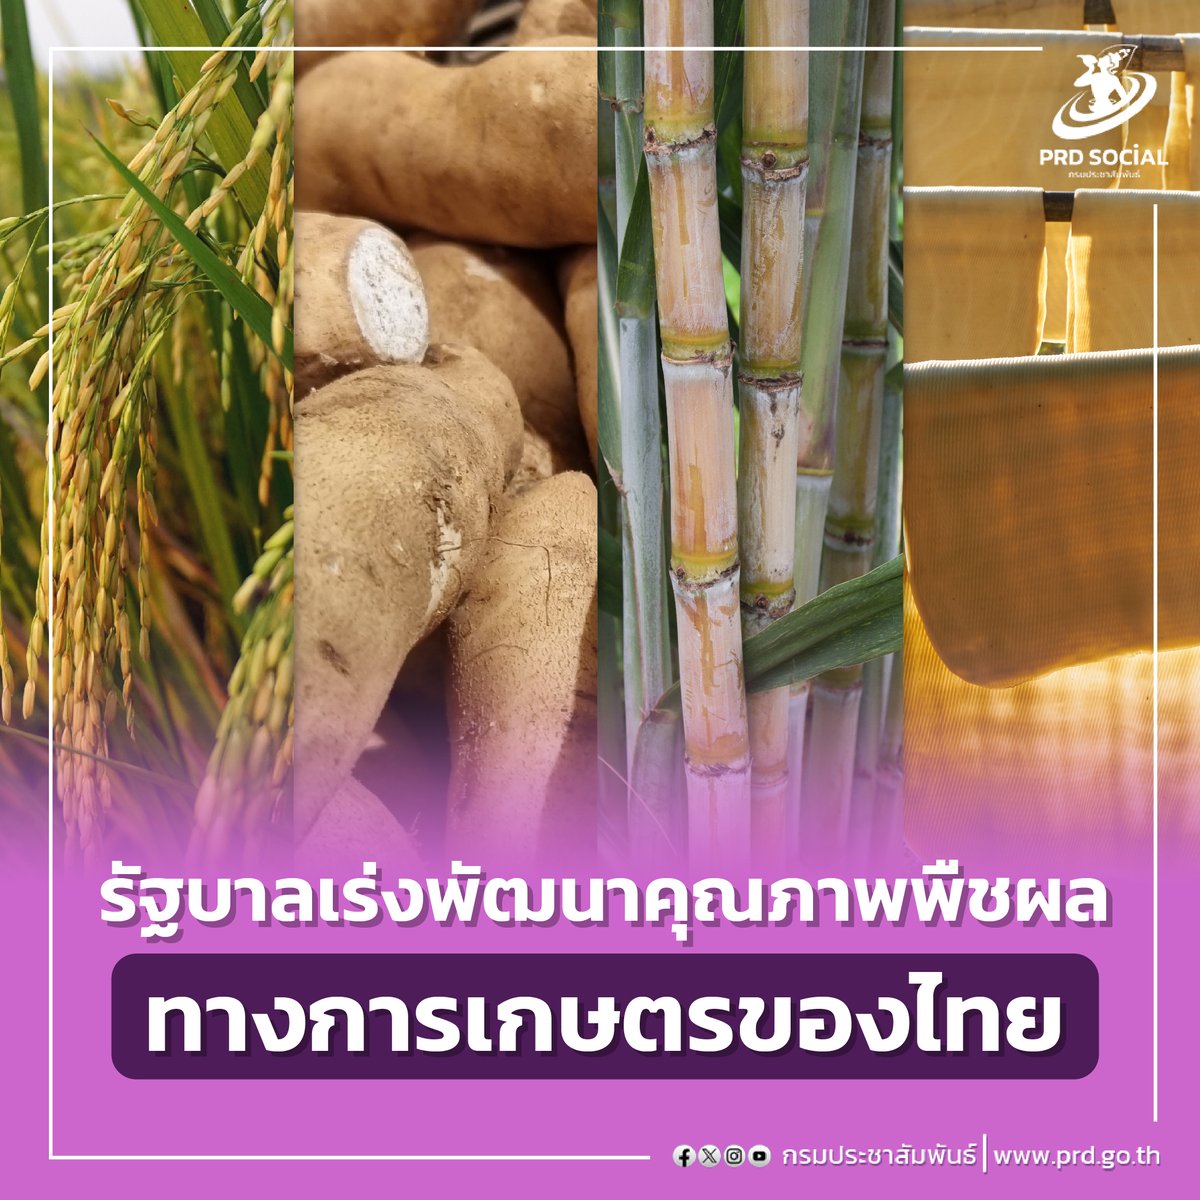 รัฐบาลเร่งพัฒนาคุณภาพพืชผลทางการเกษตรของไทย ย้ำยกระดับราคาสินค้าทางการเกษตร ทั้ง ข้าว มัน ยาง อ้อย ราคาดีขึ้นมาก ▶️ อ่านข้อมูลเพิ่มเติม : prd.go.th/th/content/cat… #รัฐบาลเร่งพัฒนาคุณภาพพืชผลทางการเกษตรของไทย #กระทรวงดิจิทัลเพื่อเศรษฐกิจและสังคม #นโยบายรัฐบาล20กระทรวง